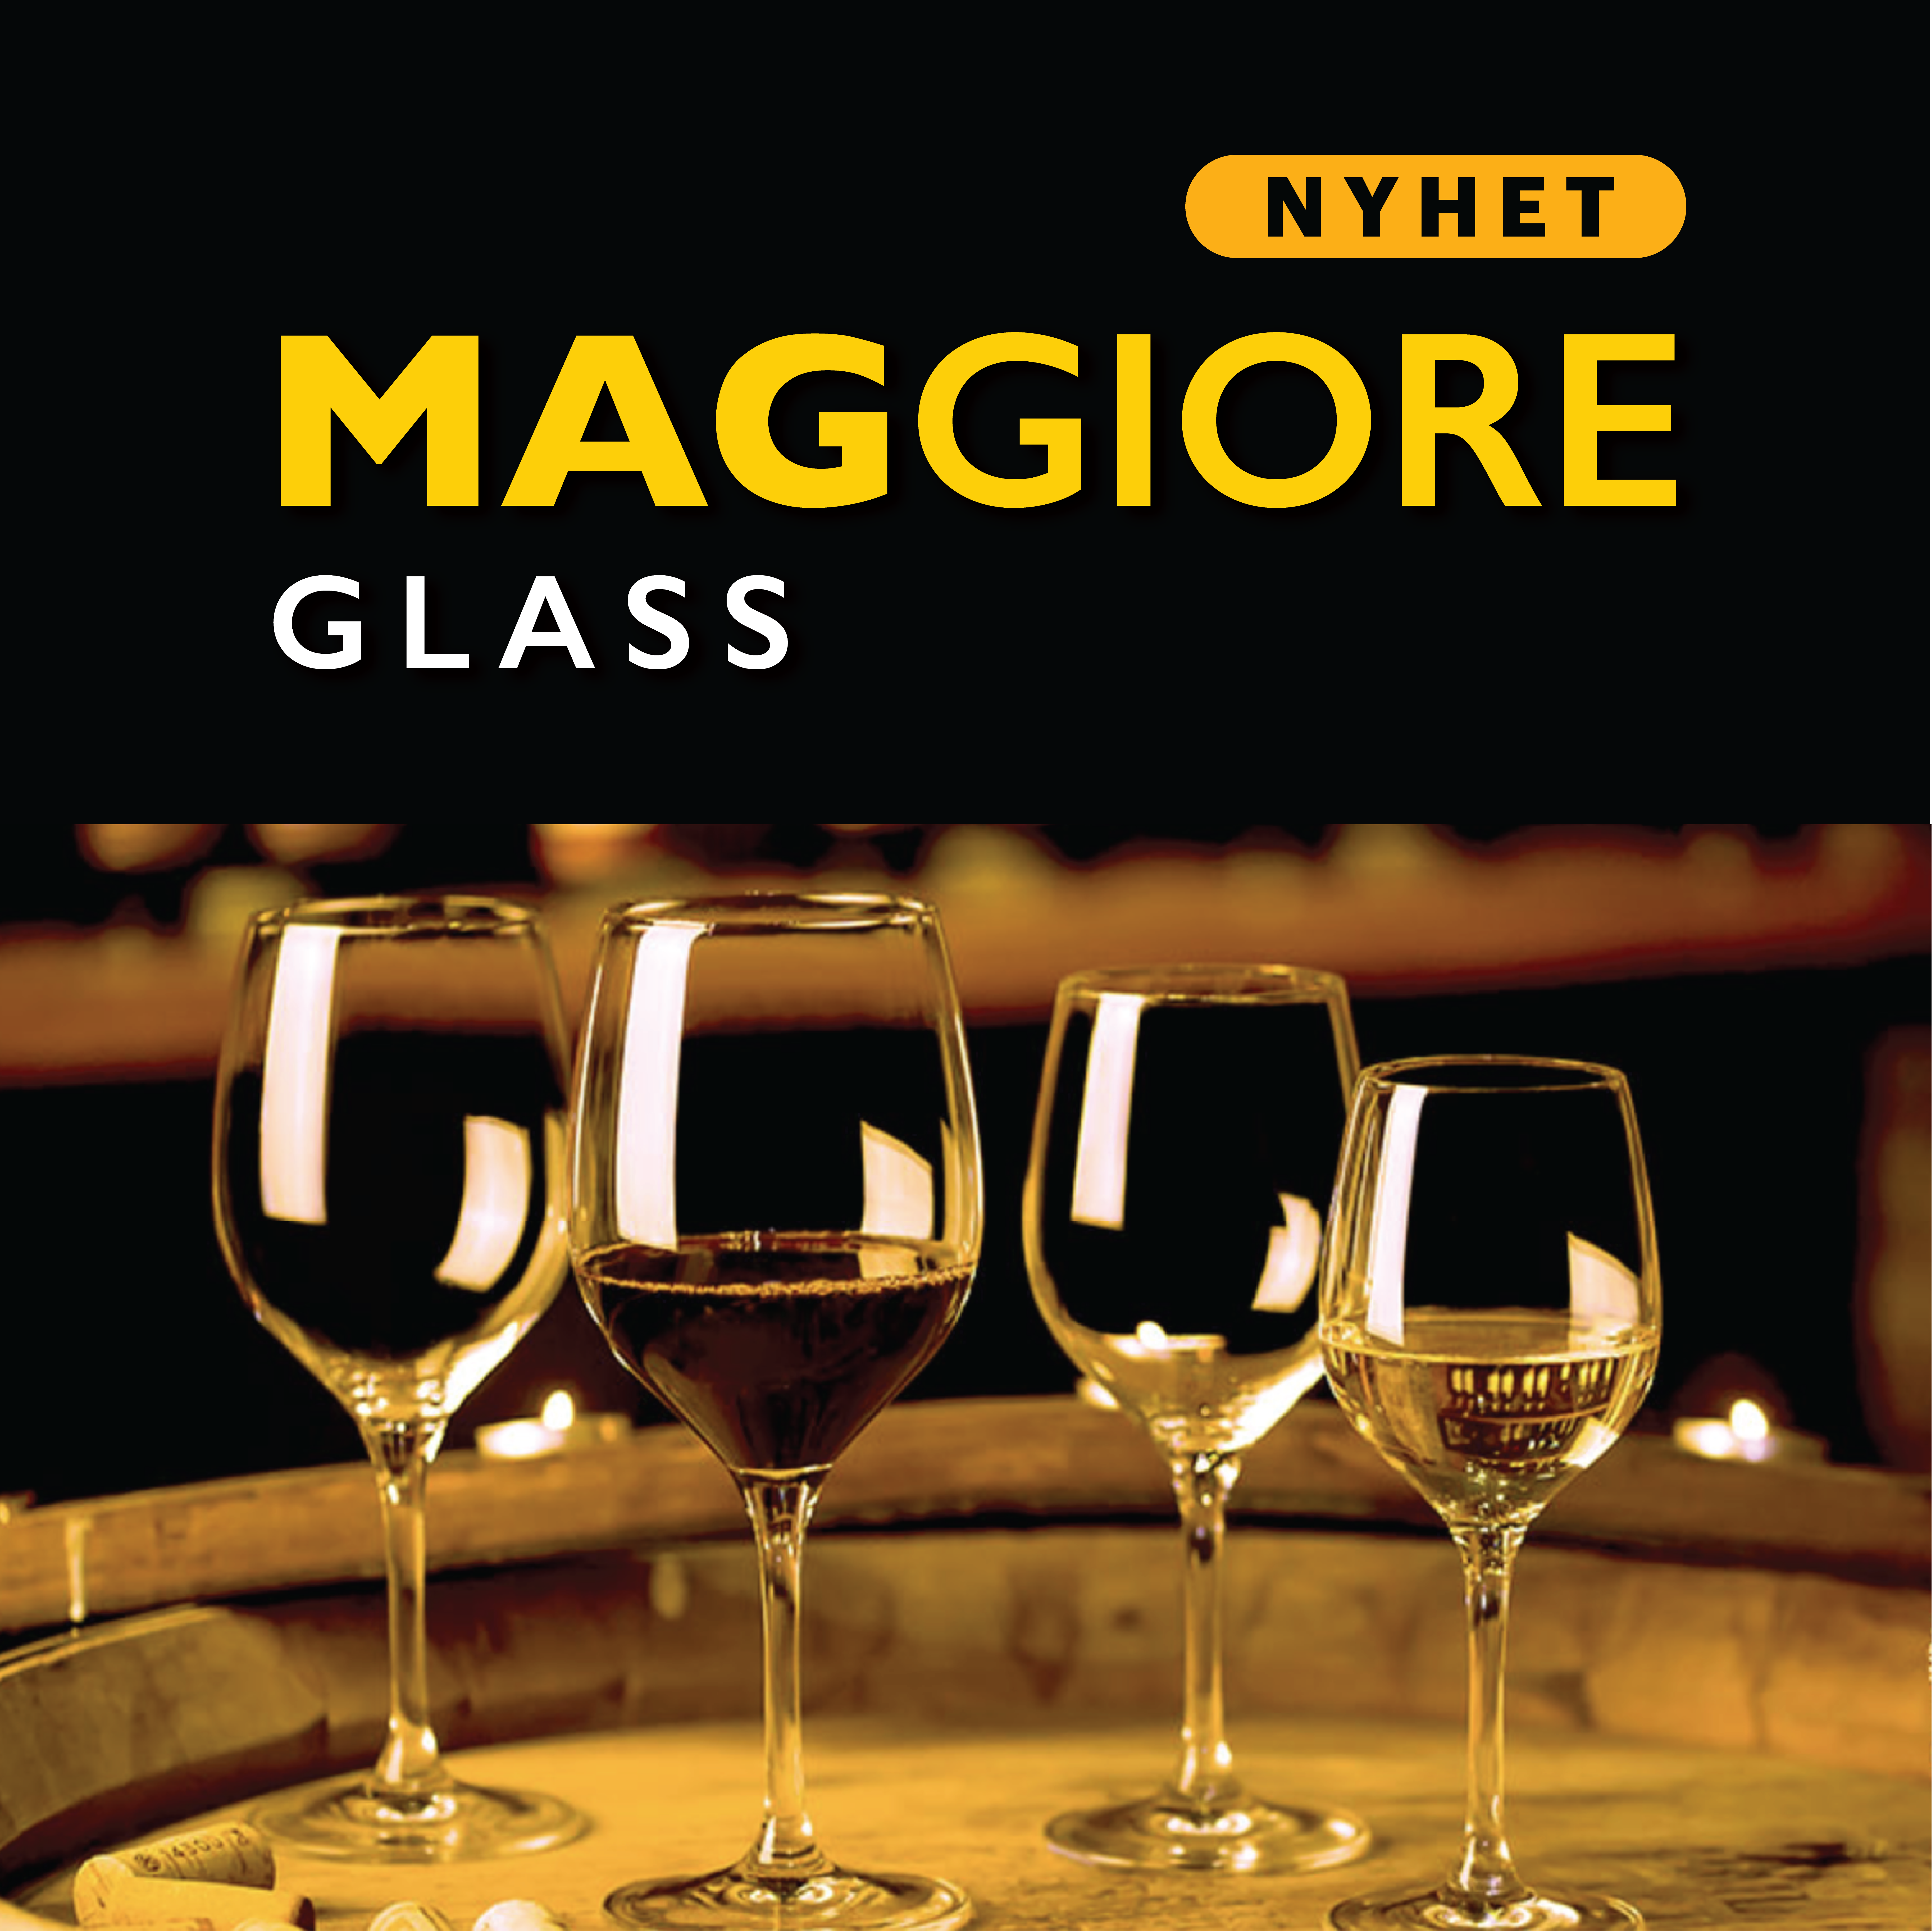 Nyhet! Maggiore Glass